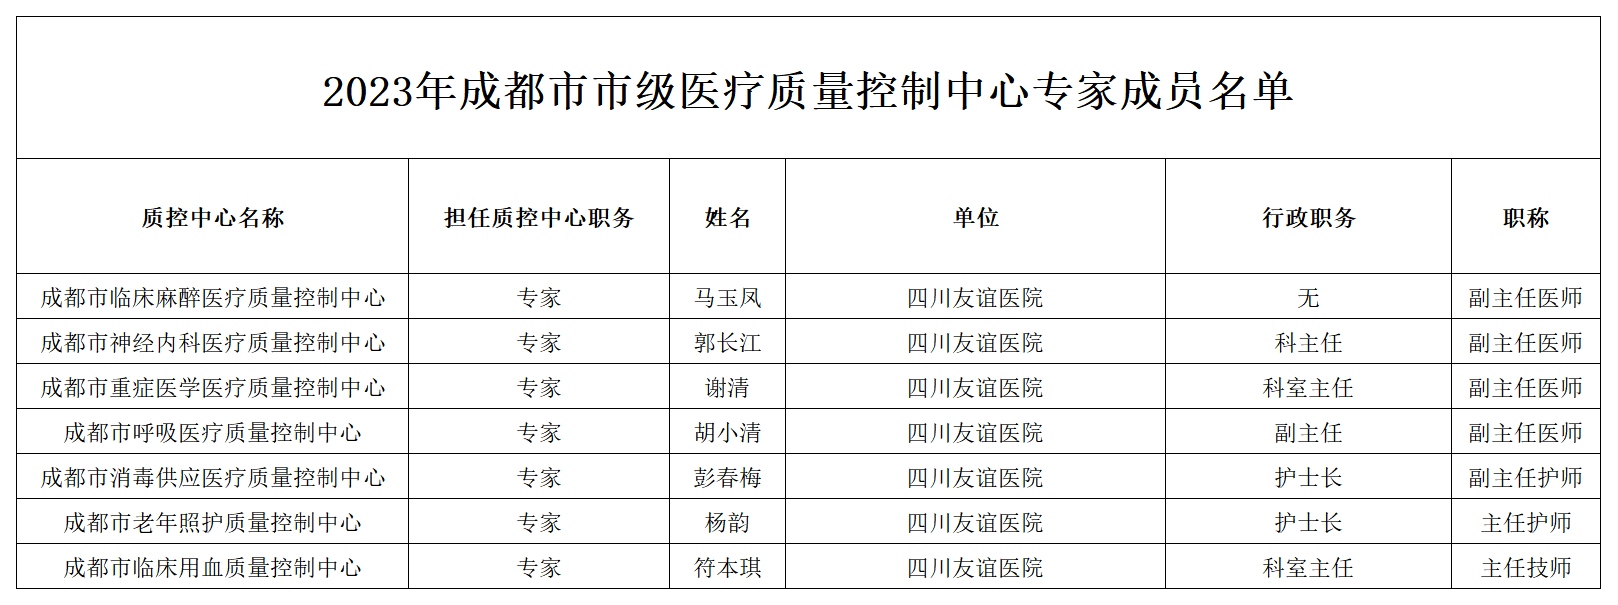 盈康生命旗下四川友谊医院7人入选成都市质控中心专家成员名单